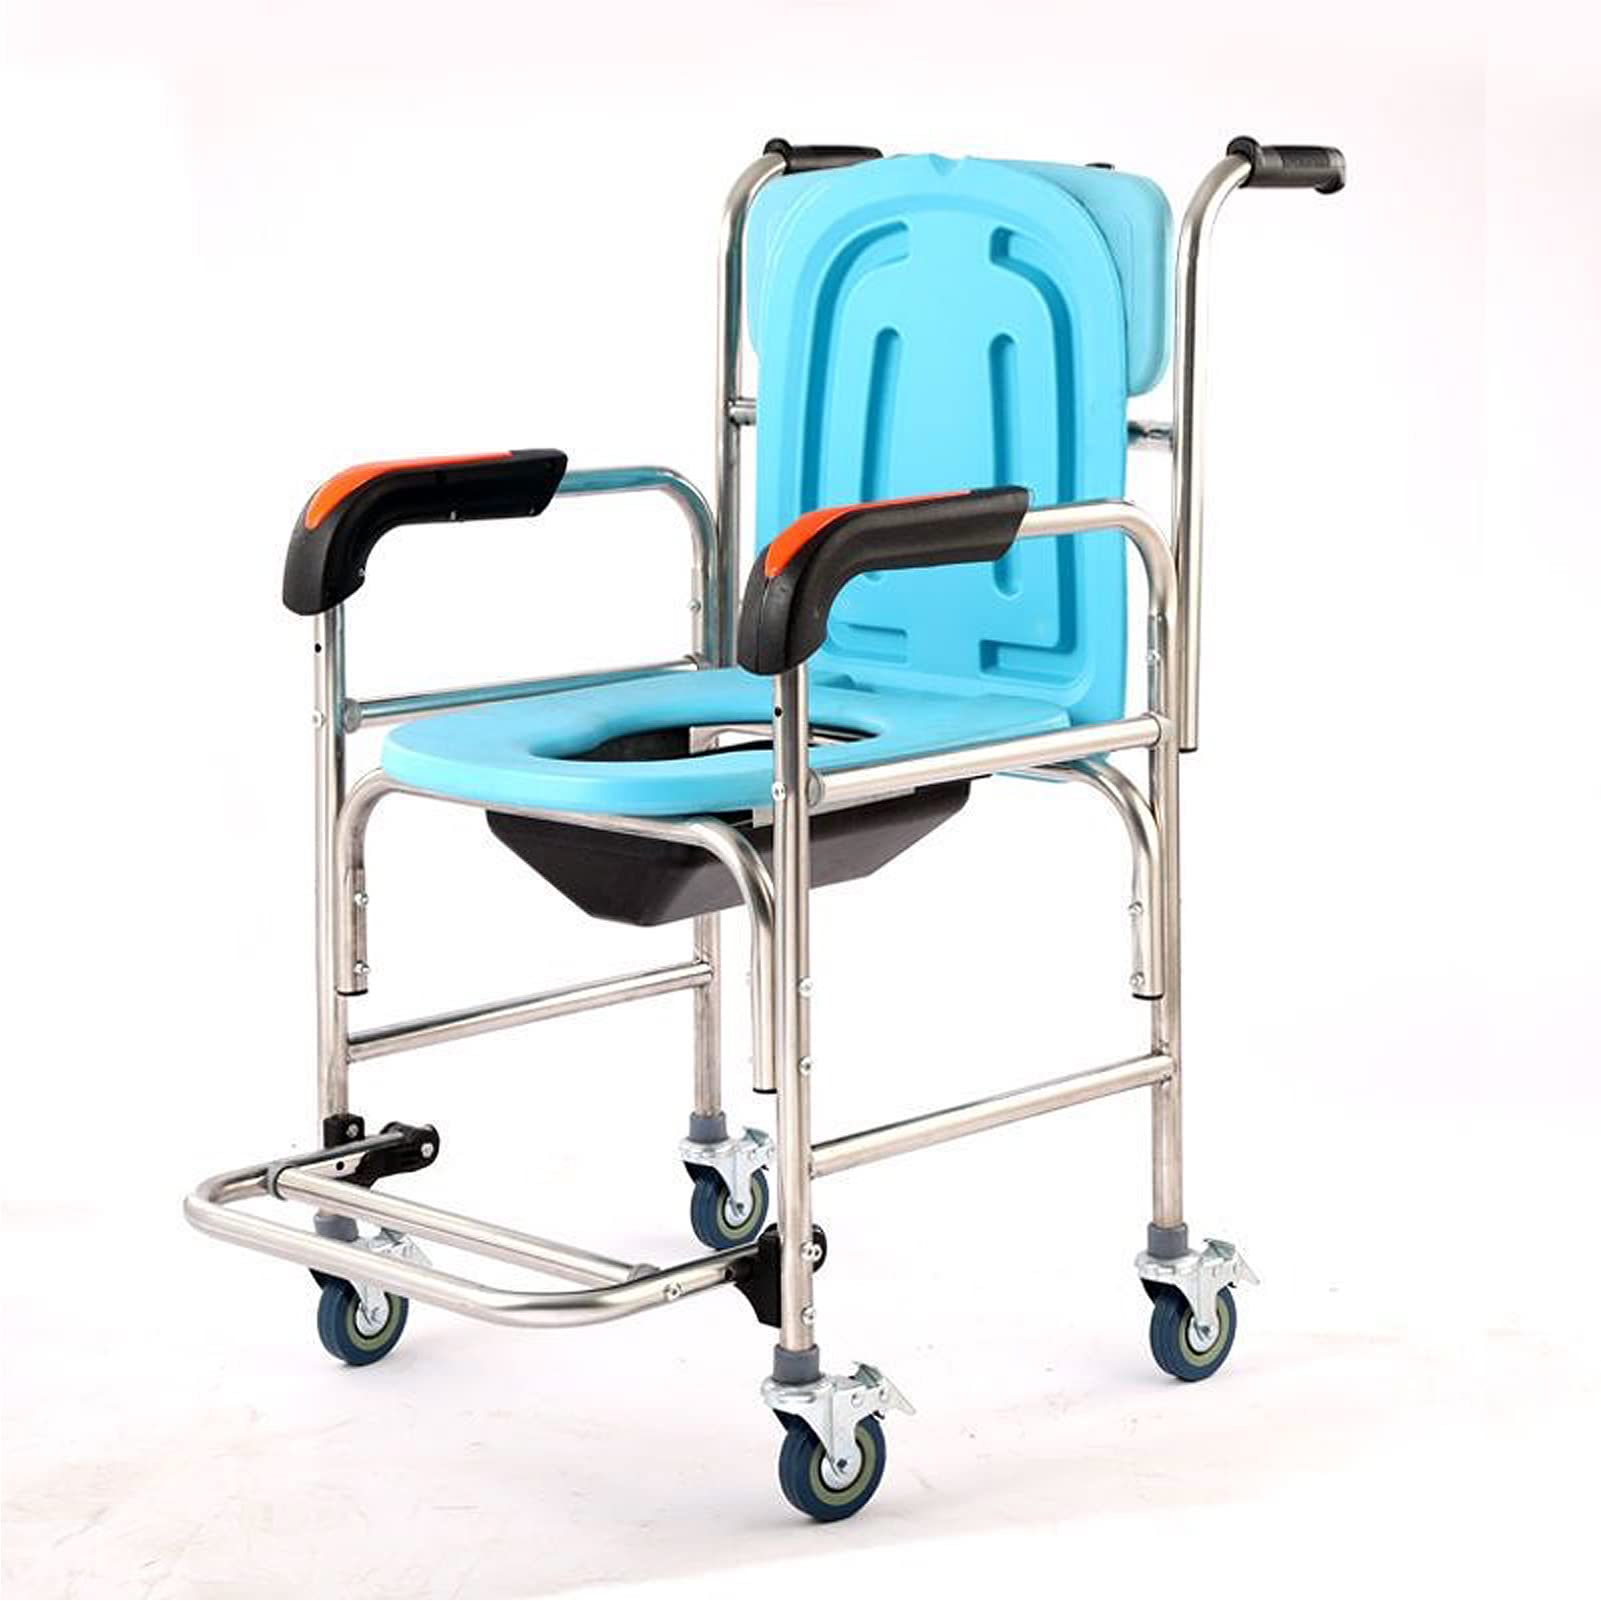 Höhenverstellbarer Duschstuhl mit Rollen und Armlehne für ältere Menschen - Rutschfester Nachttisch-Toilettenstuhl mit Rückenlehne und Toilette - Trägt bis zu 150 kg